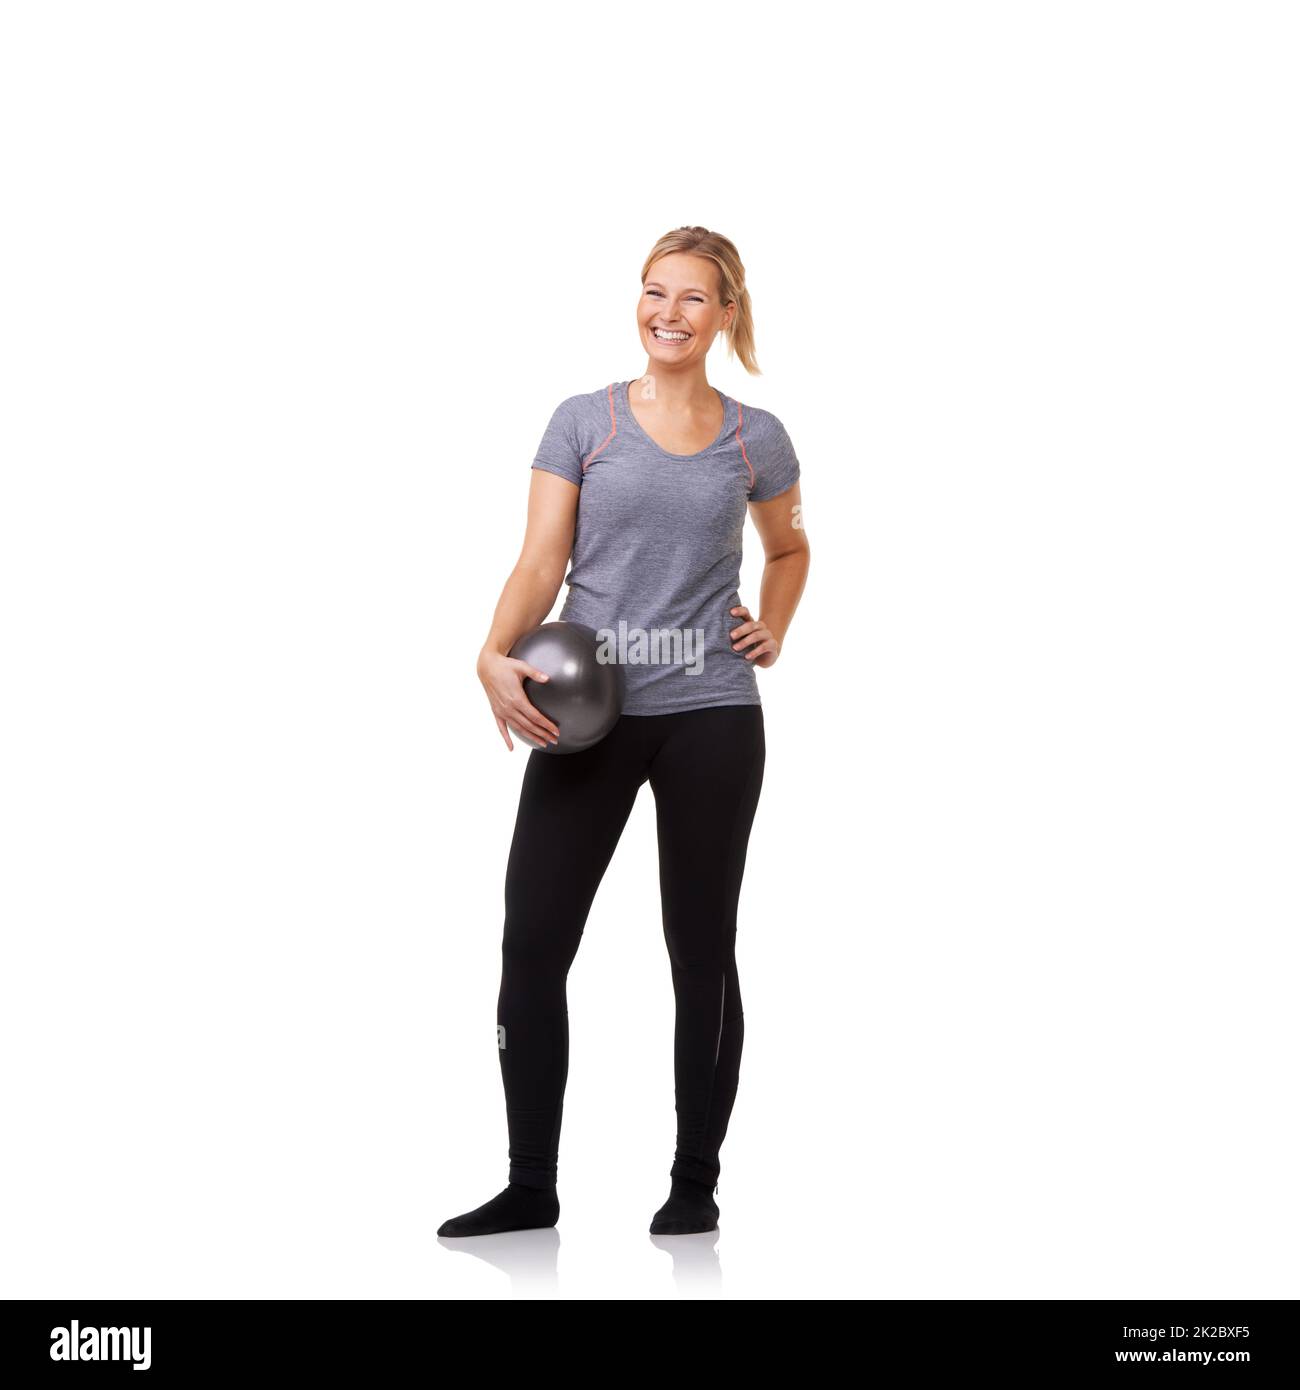 Wow dieser Ball machte den Unterschied. Eine hübsche junge Blondine, die nach einem belebenden Training einen Übungsball hält. Stockfoto